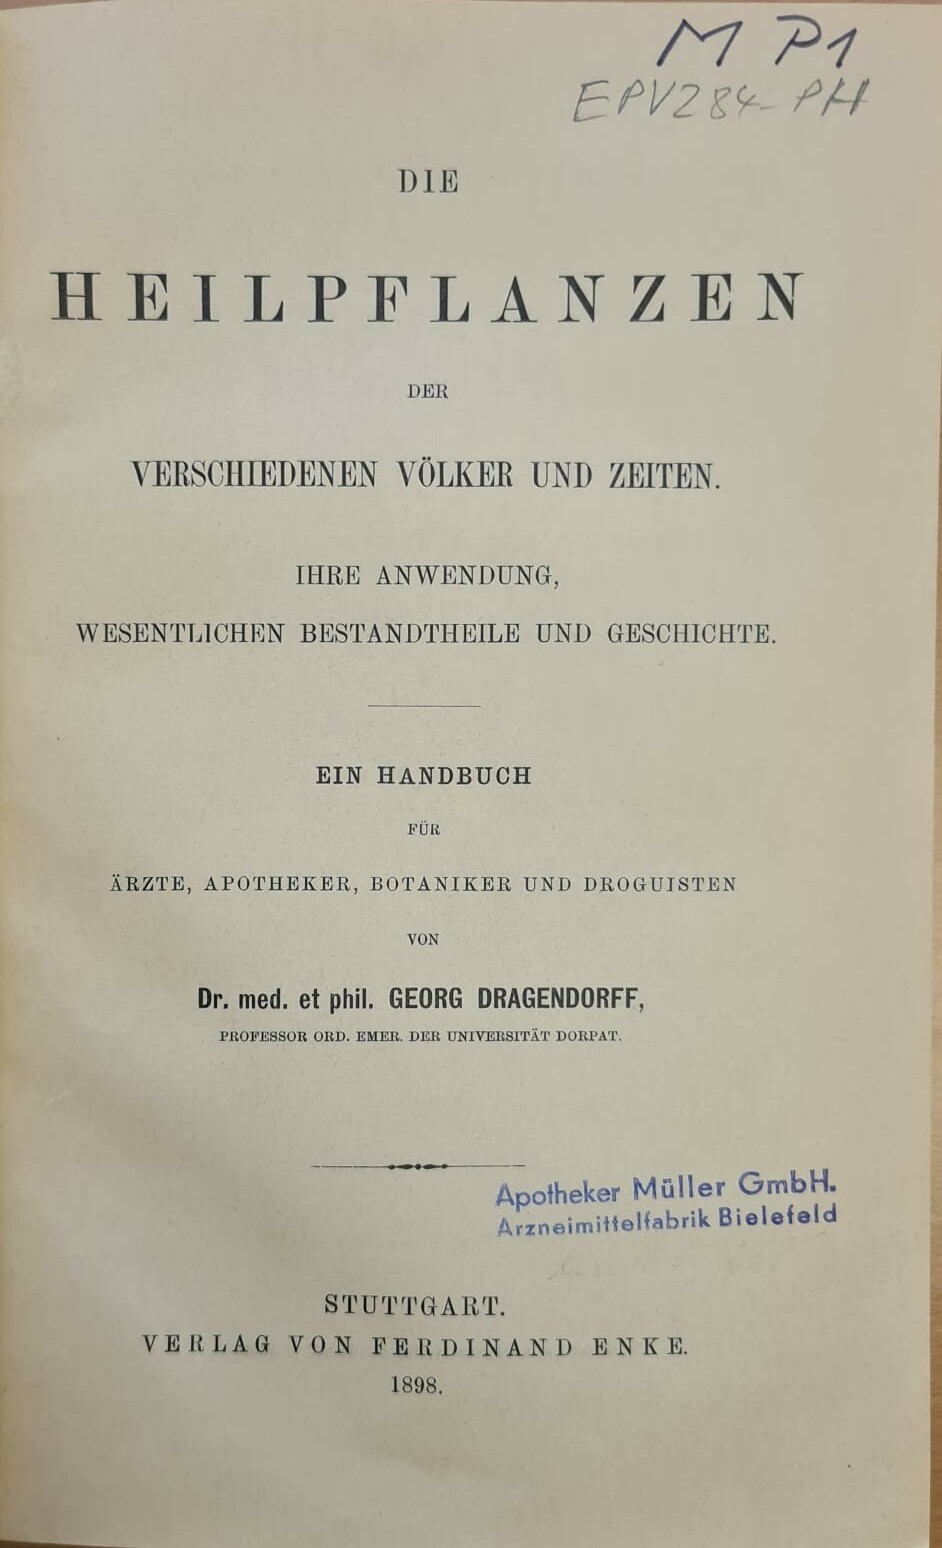 Die Heilpflanzen der verschiedenen Völker und Zeiten (Krankenhausmuseum Bielefeld e.V. CC BY-NC-SA)